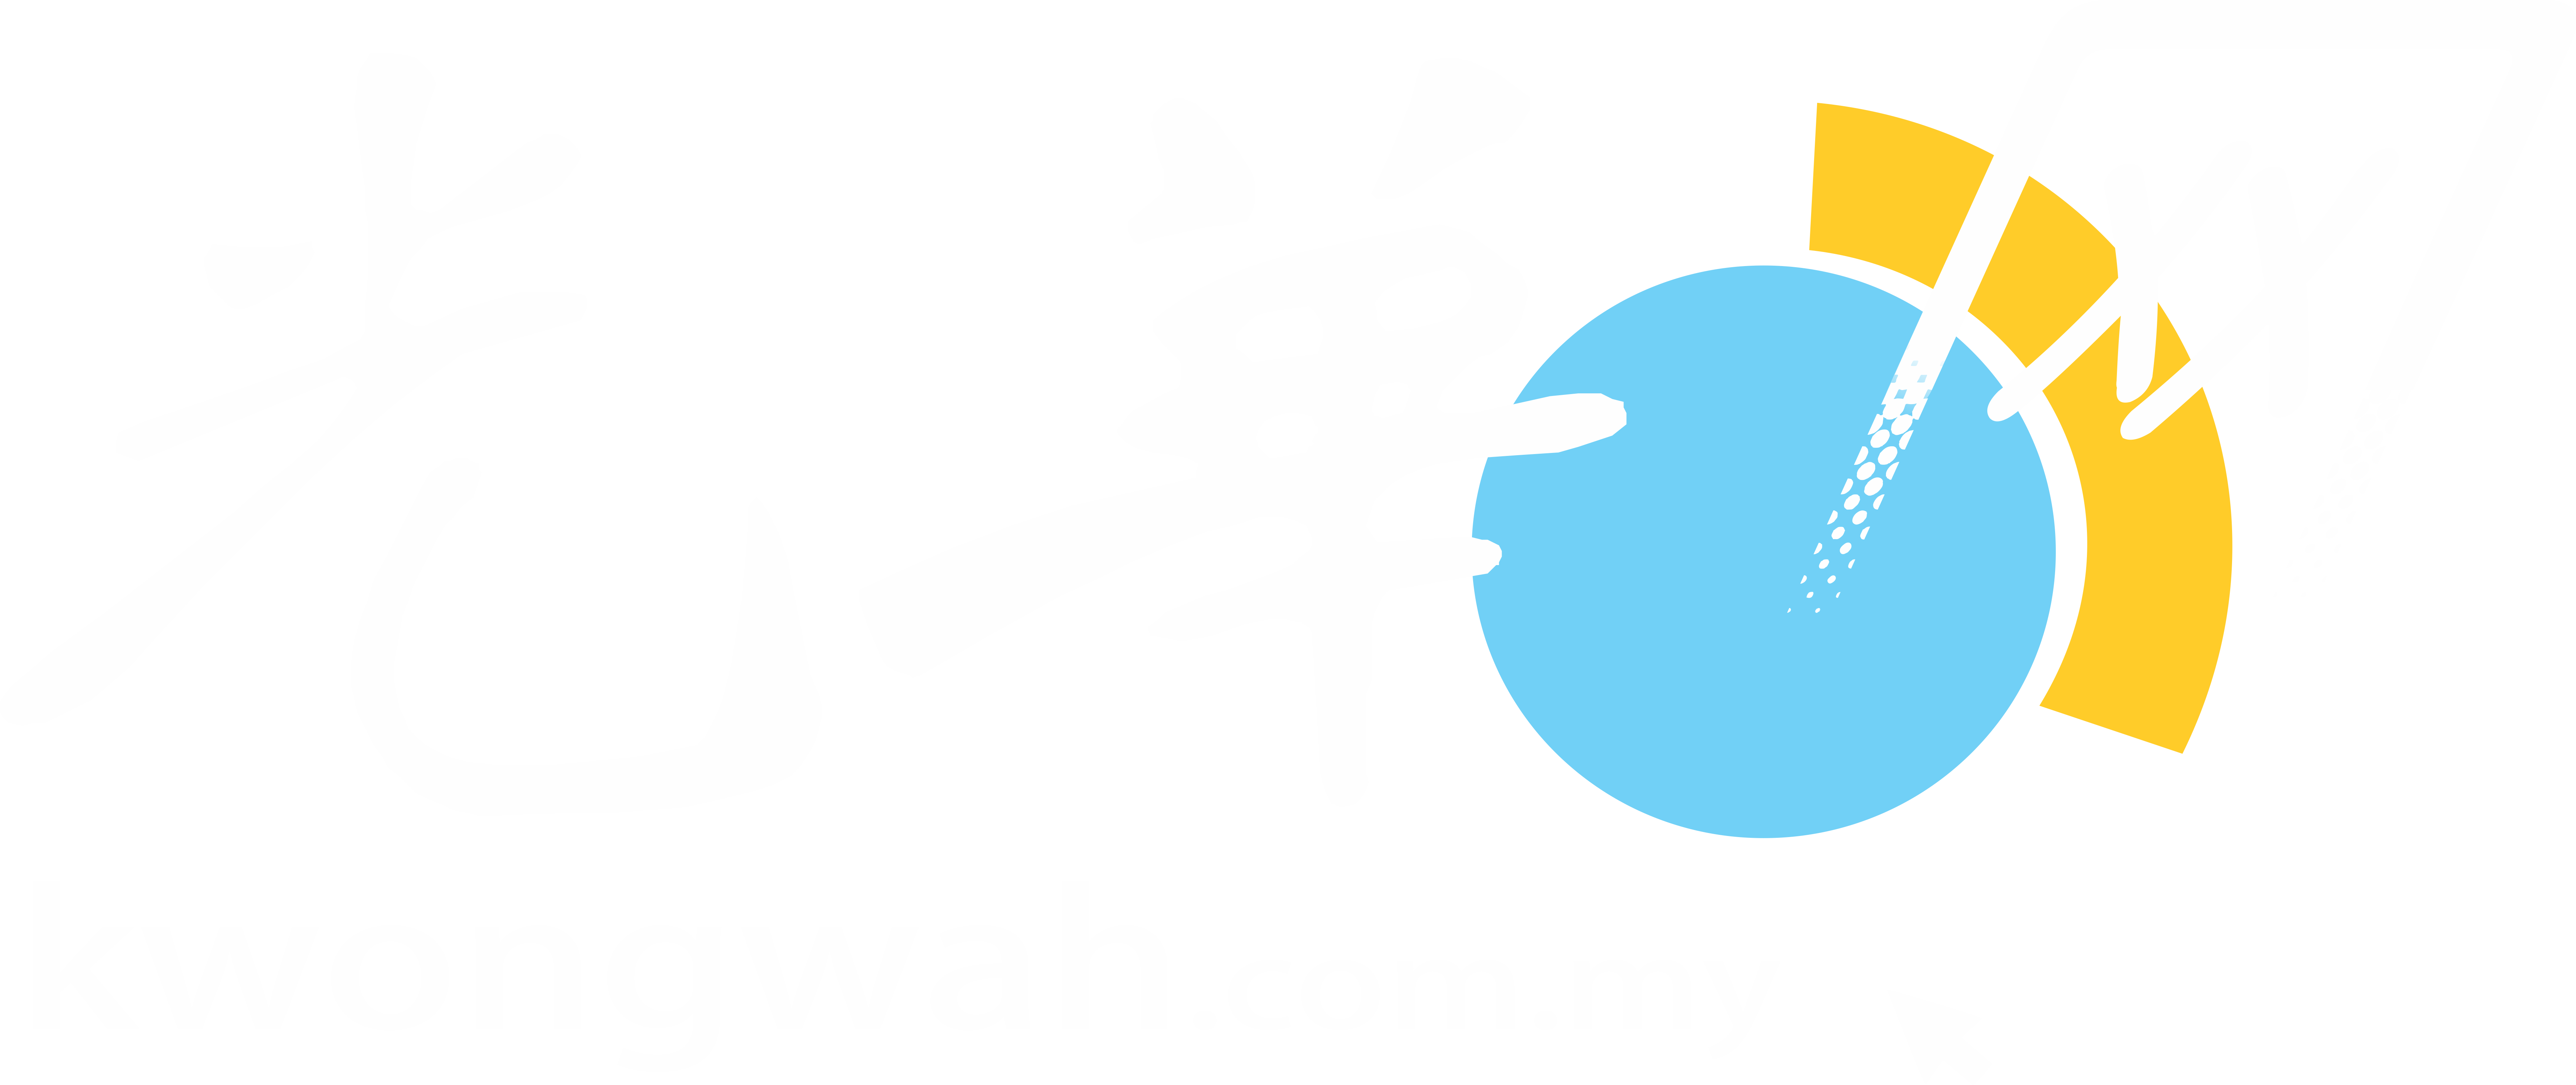 Kwong wah daily